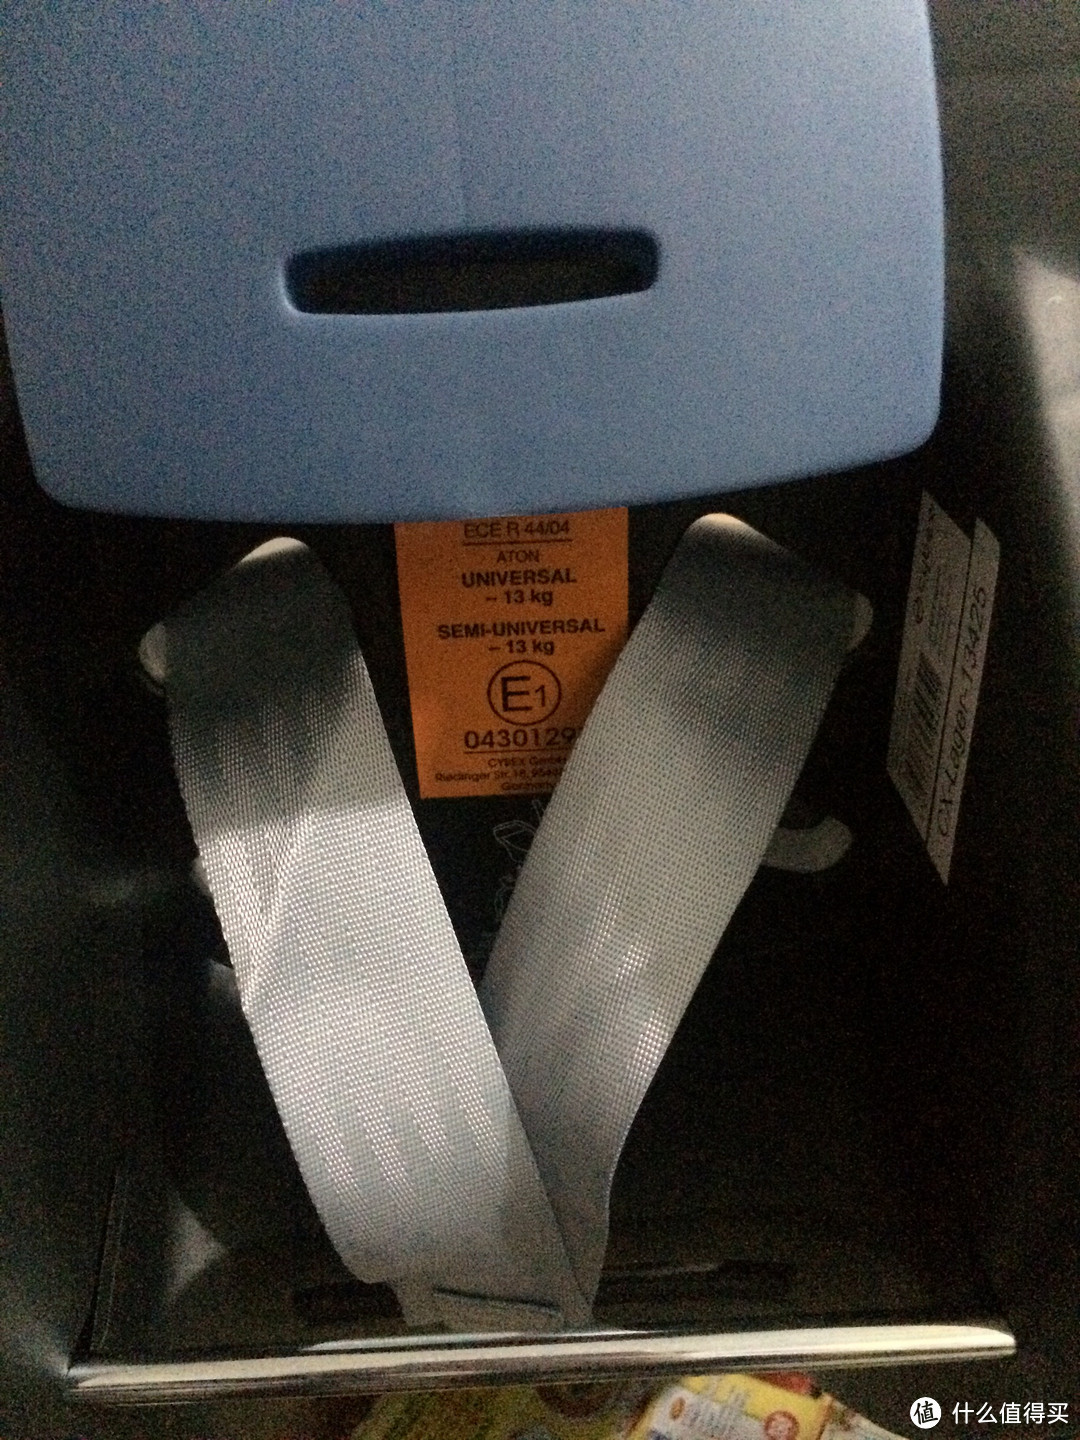 德淘 kidroom cybex 儿童汽车安全座椅